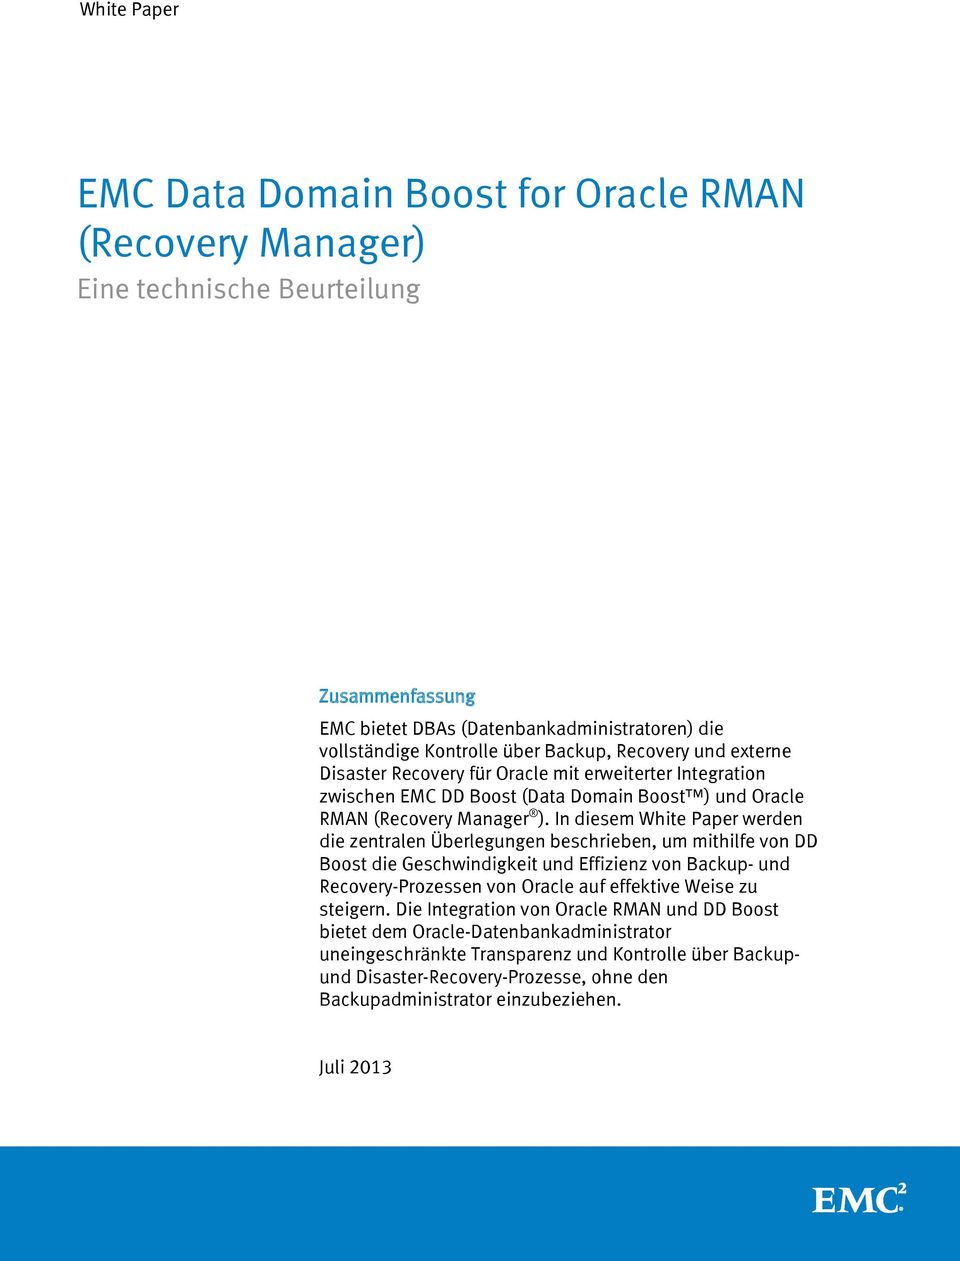 In diesem White Paper werden die zentralen Überlegungen beschrieben, um mithilfe von DD Boost die Geschwindigkeit und Effizienz von Backup- und Recovery-Prozessen von Oracle auf effektive